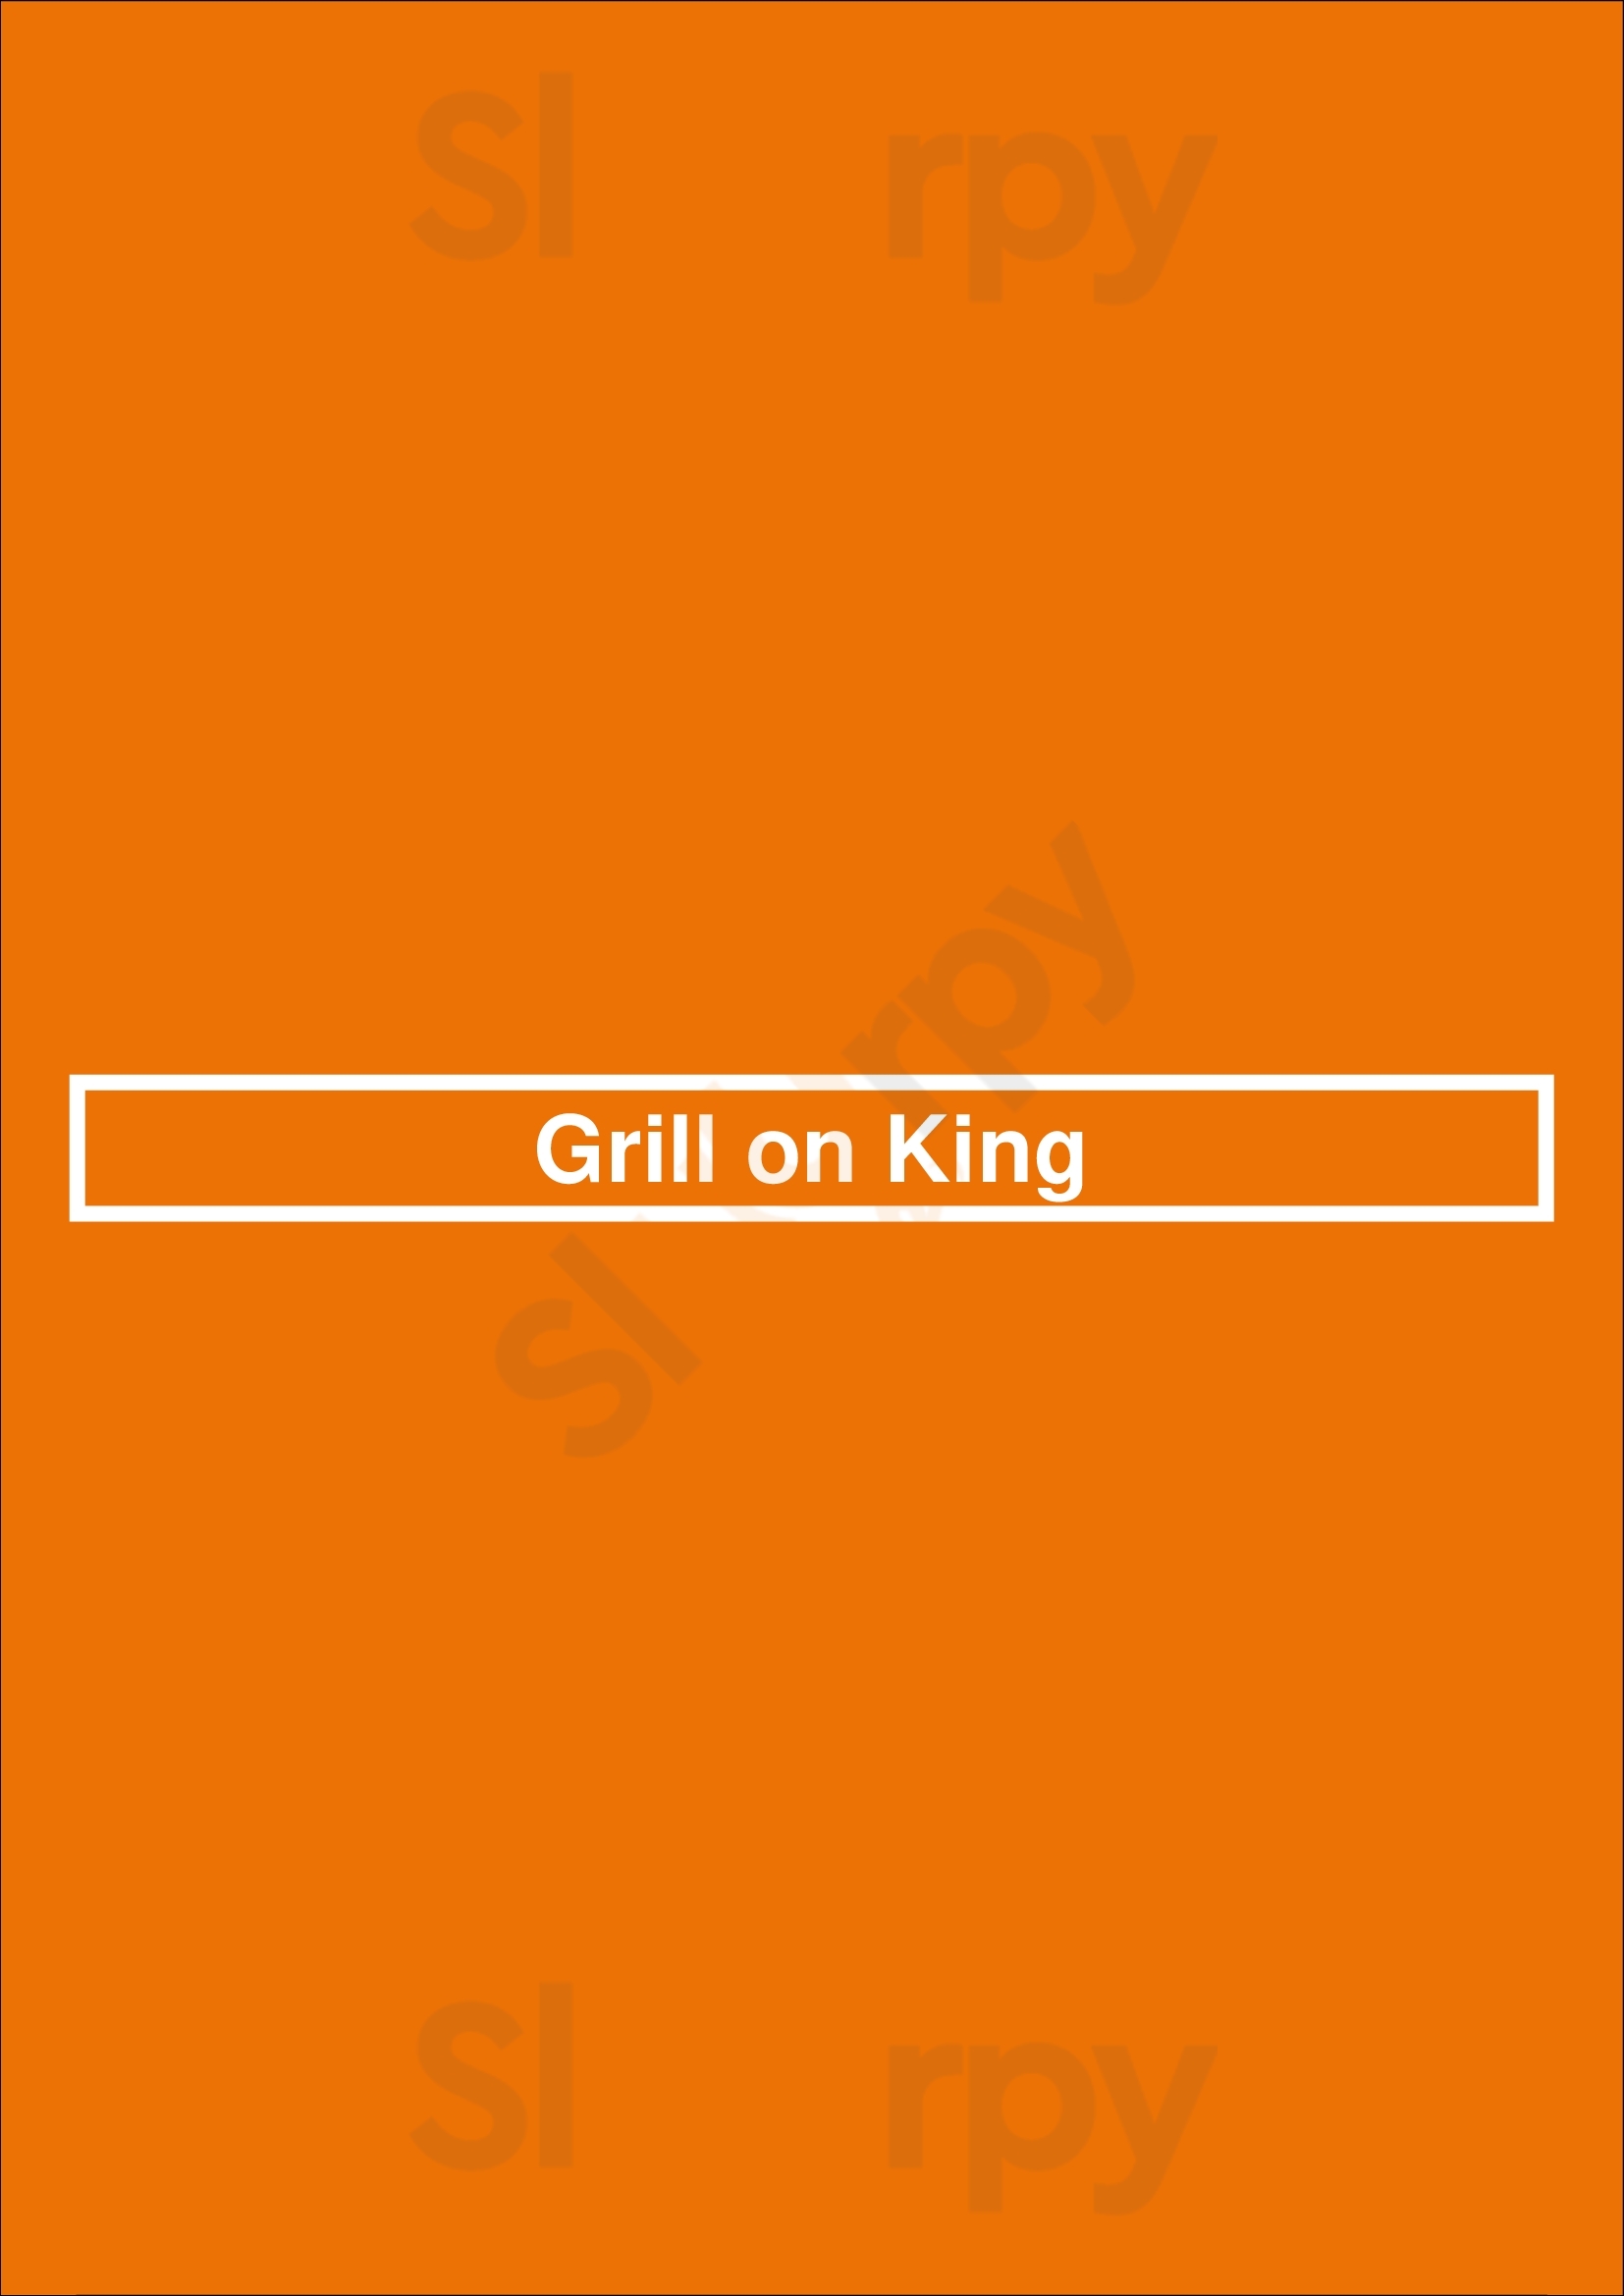 Grill On King Niagara-on-the-Lake Menu - 1